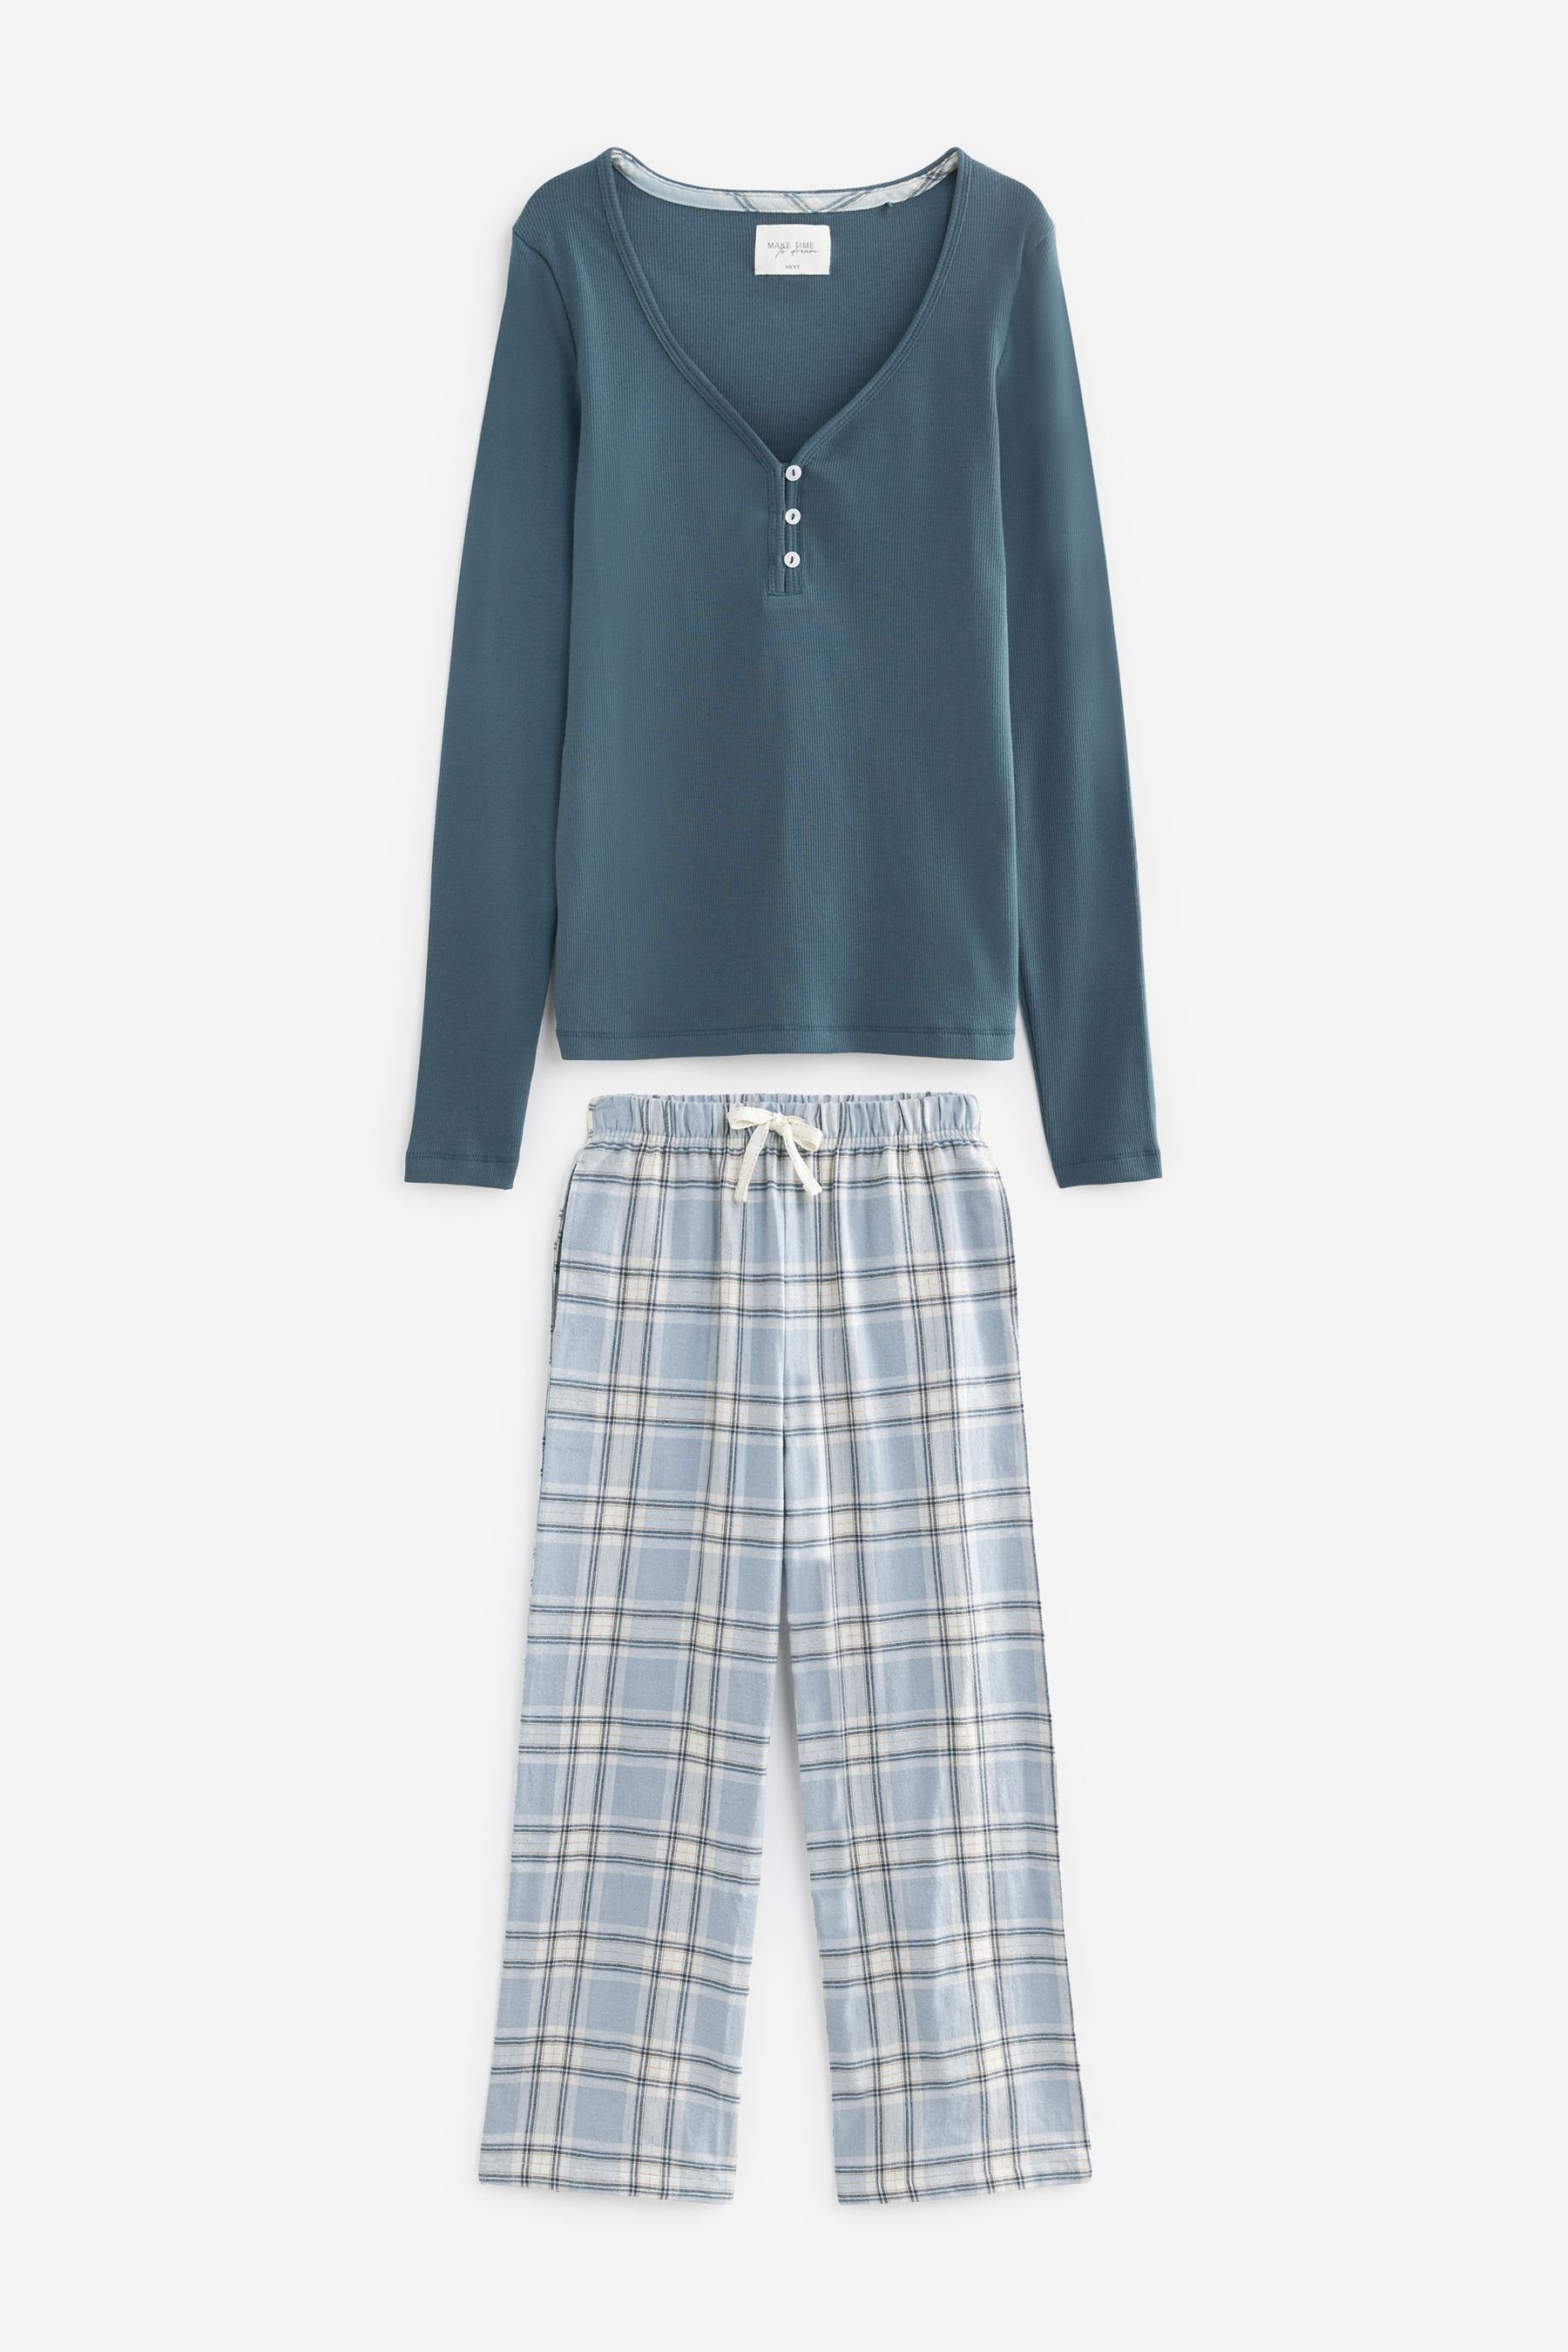 Next Pyjama Schlafanzug mit geripptem Top und Flanellhose (2 tlg) Blue